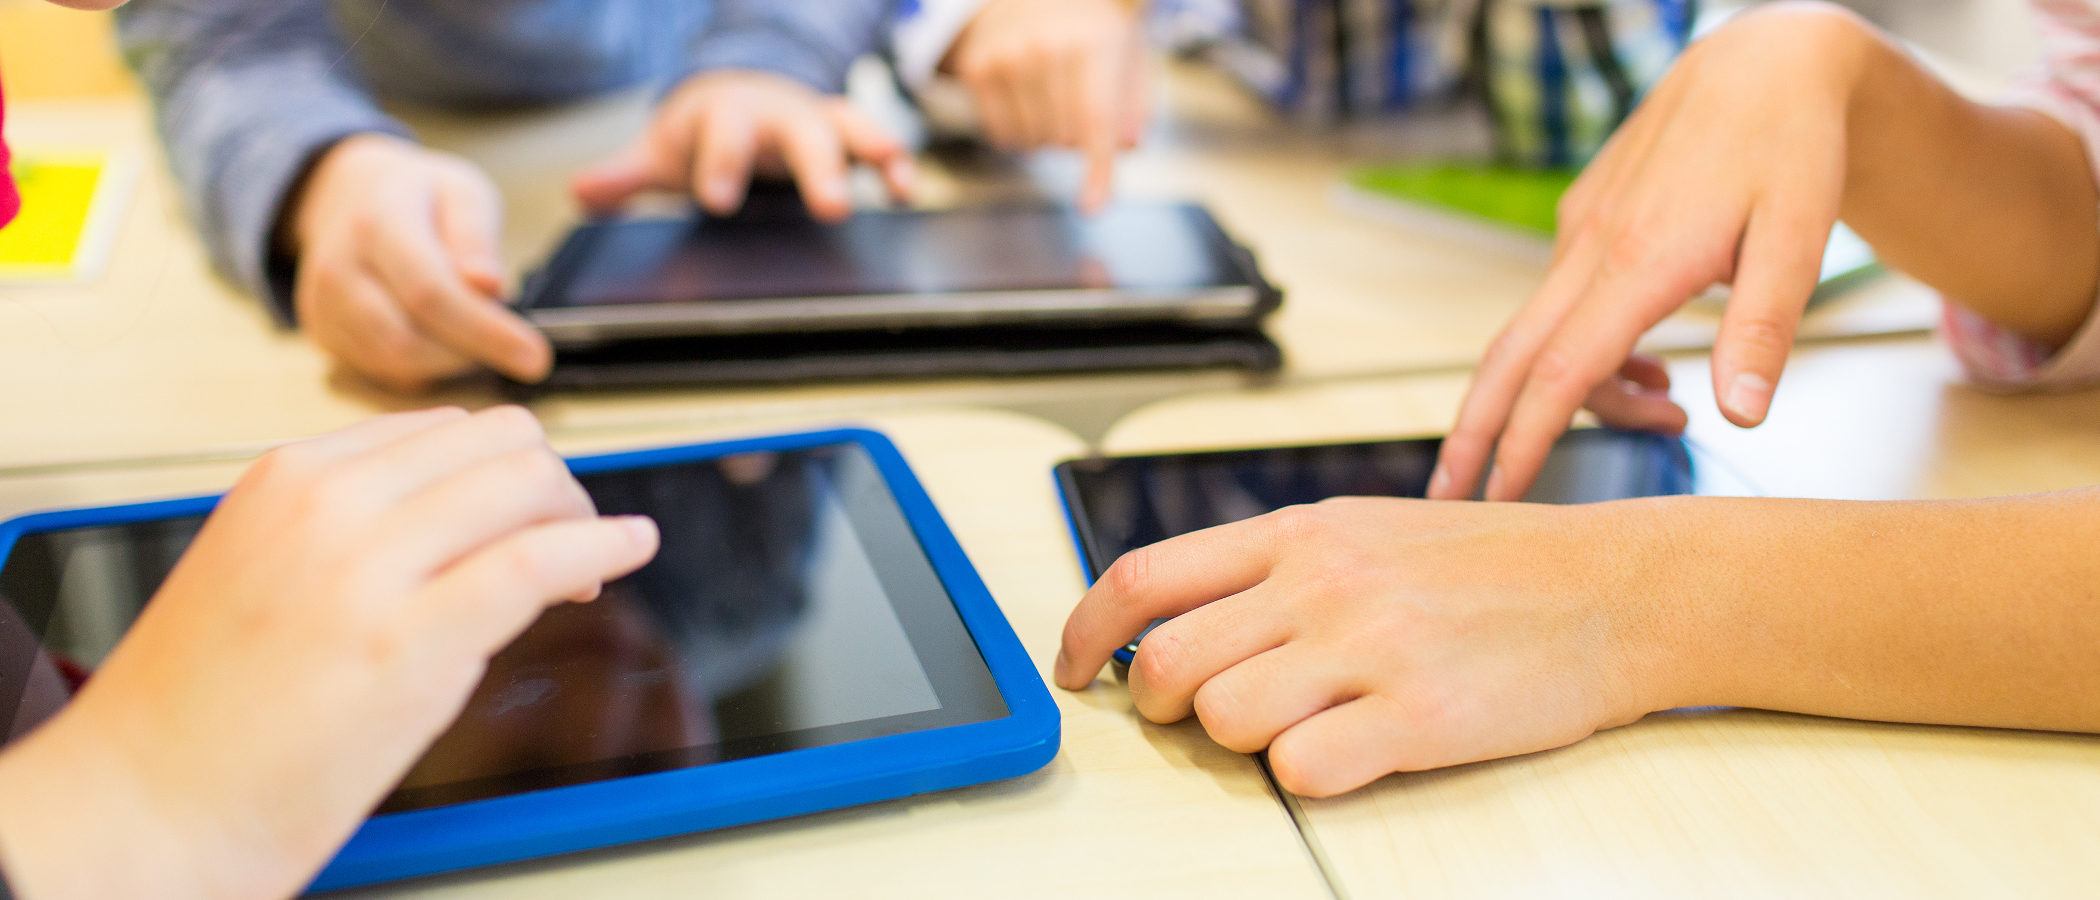 6 apps para controlar y limitar el uso de tablets y móviles en niños